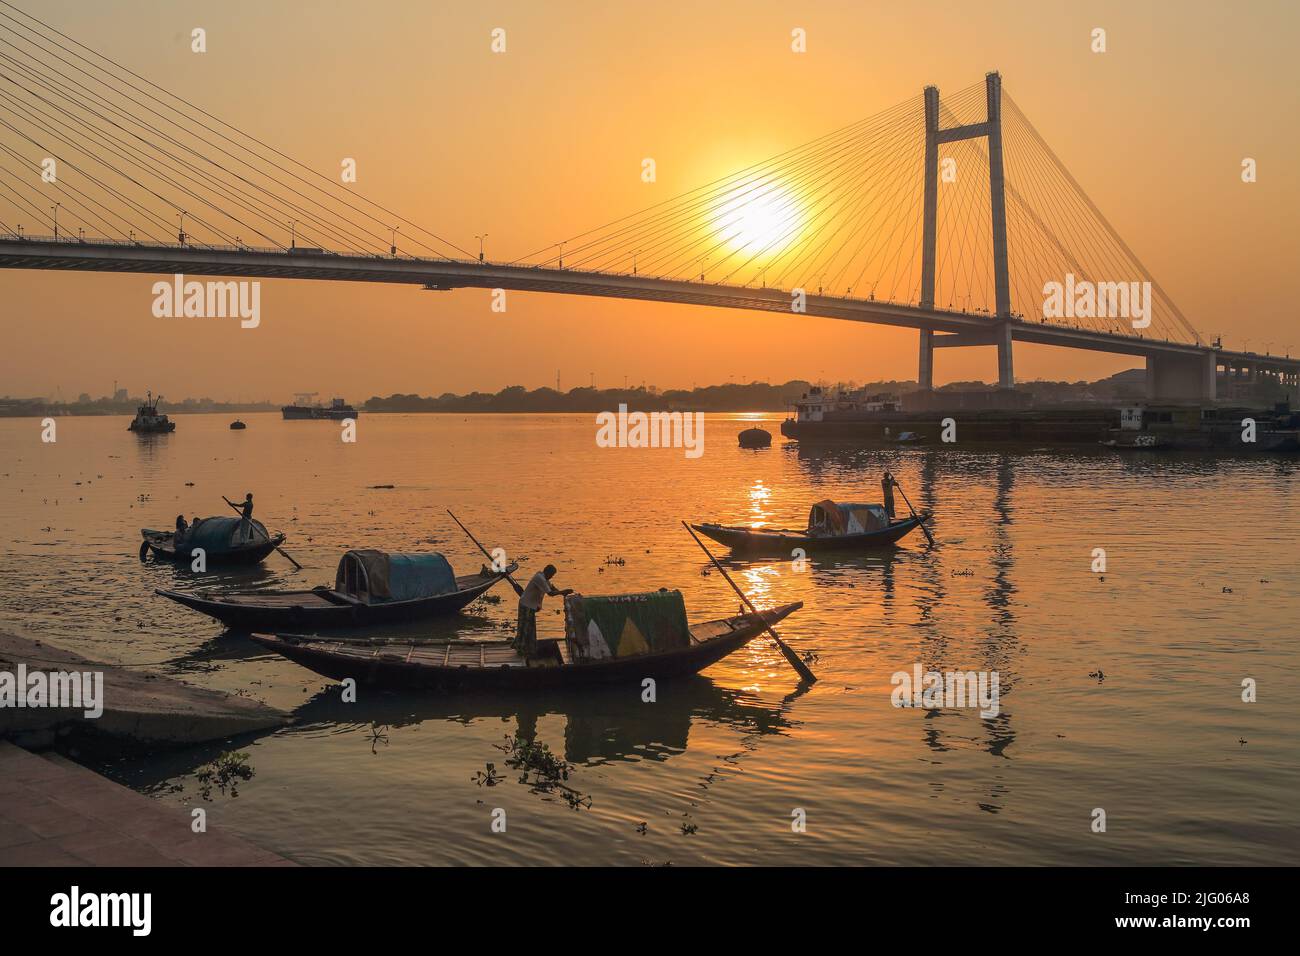 Kalkutta, 20, März, 2013; Reflexionen von lokalen Booten und Vidyasagar Setu, Brücke gegen Sonnenuntergang Hintergrund im Fluss Hooghly, Kalkutta, Indien Stockfoto